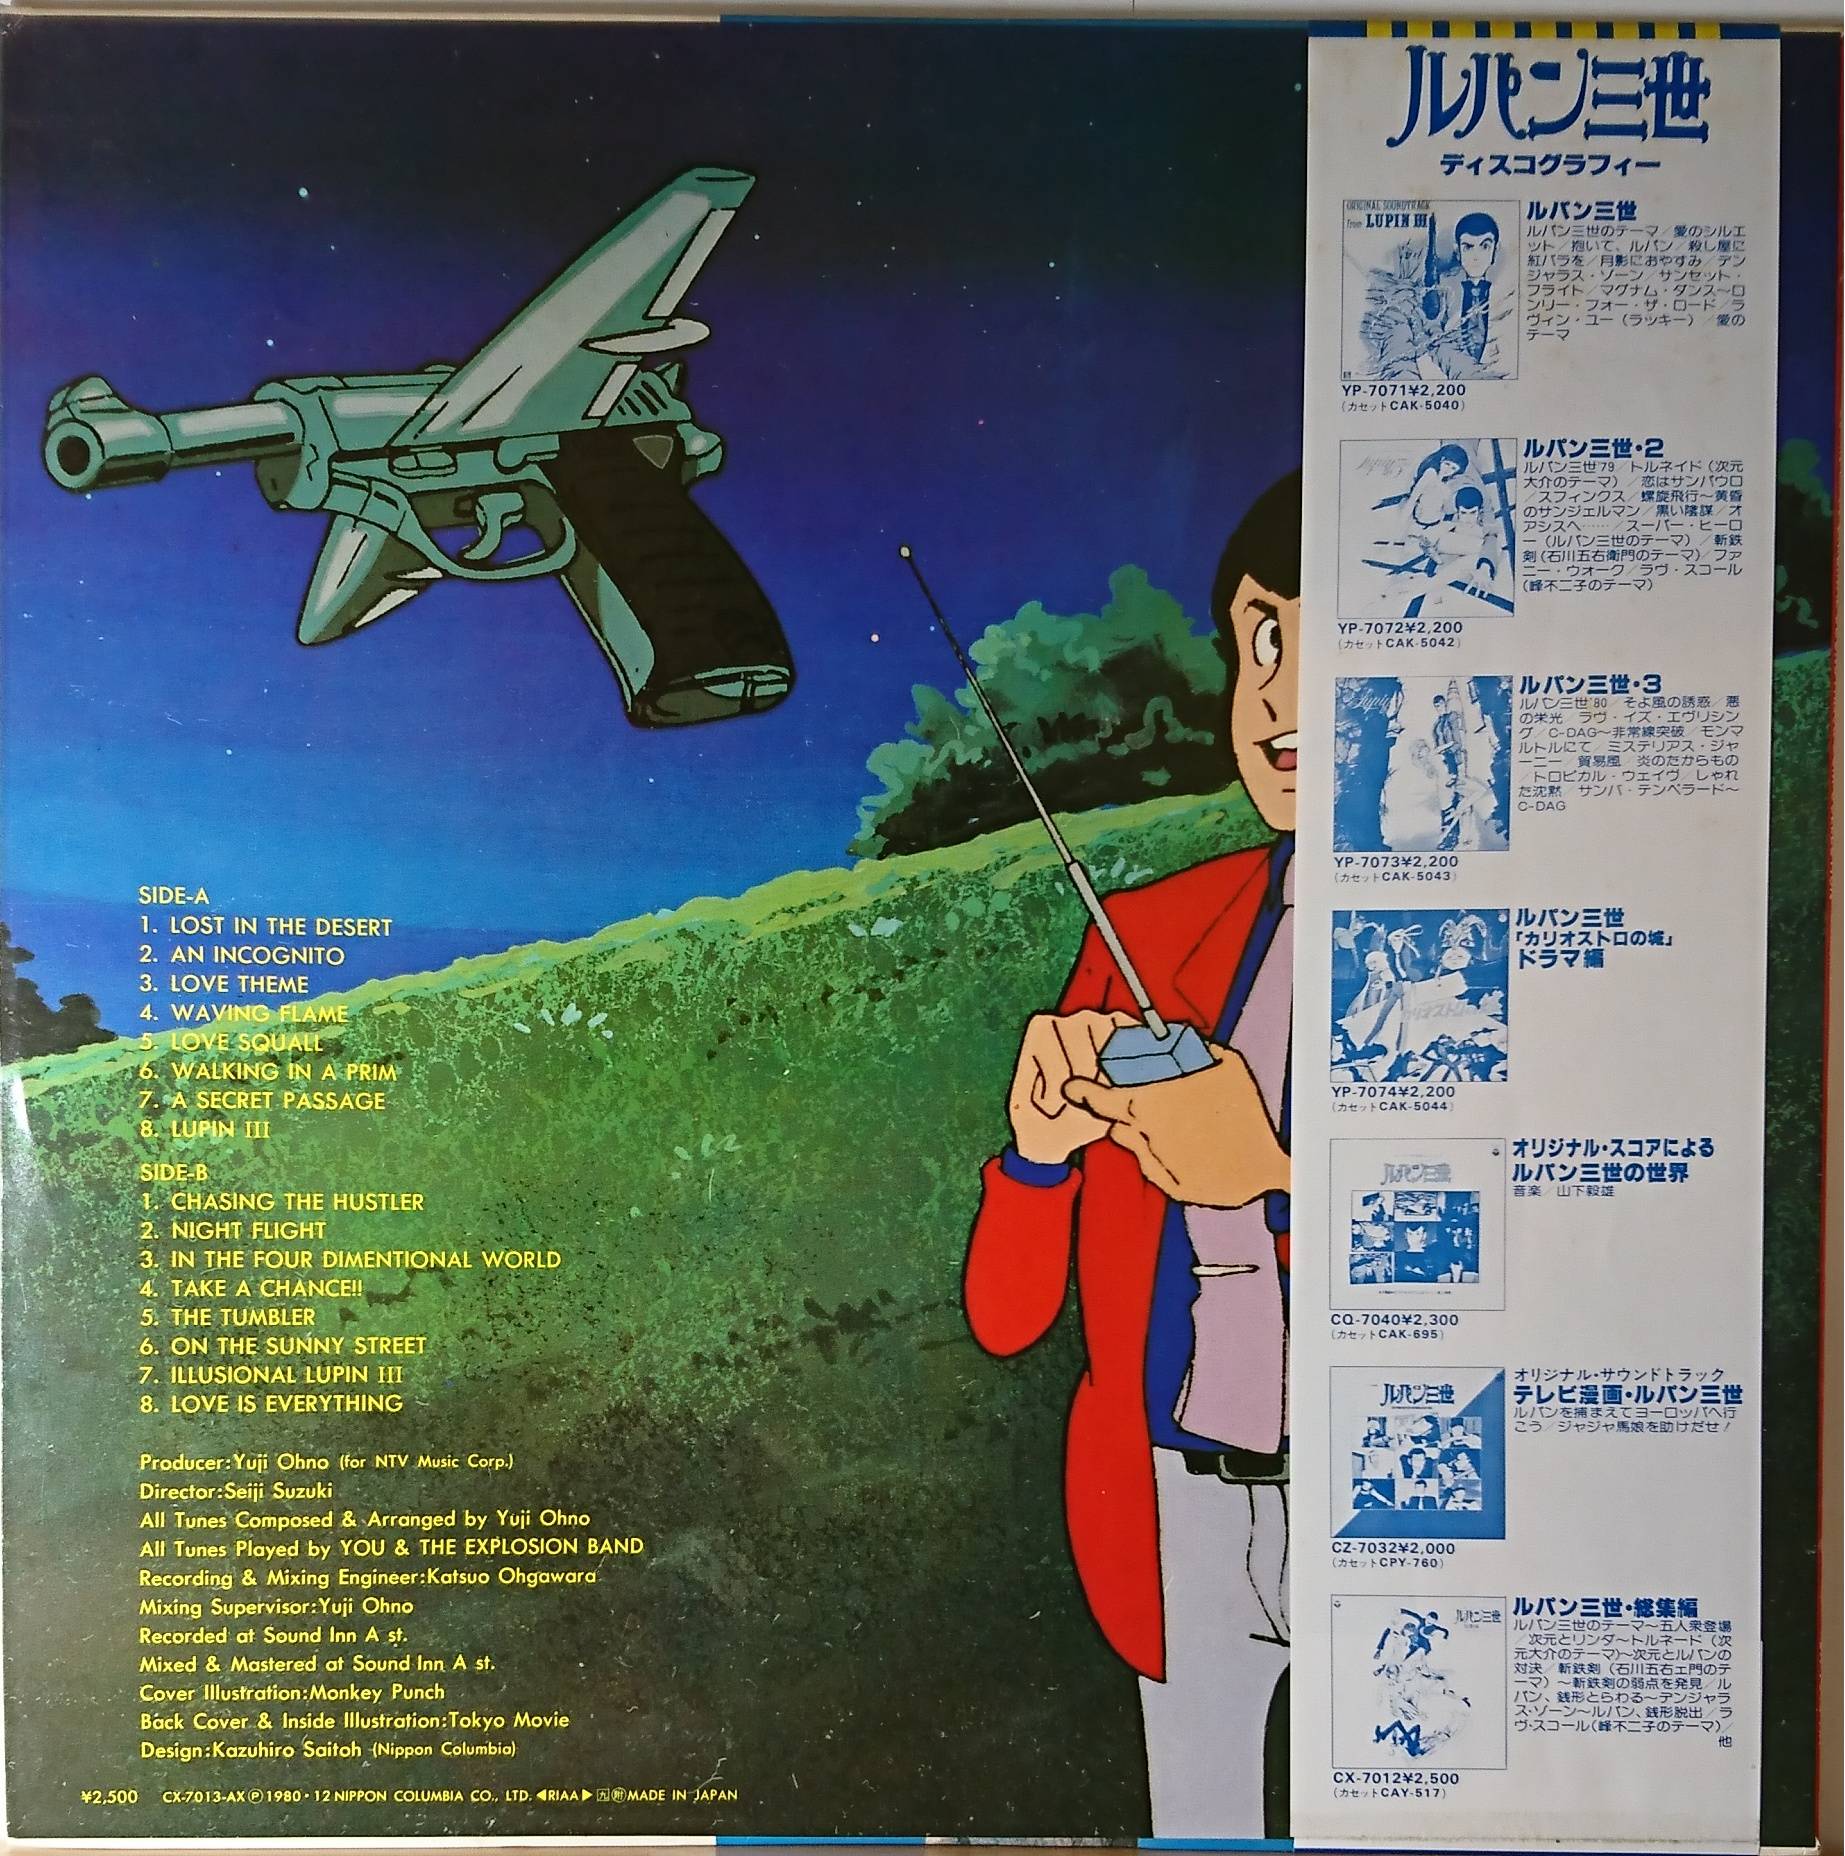 ルパン三世 - TV Original Soundtrack BGM Collection | 中古レコード通販・買取のアカル・レコーズ